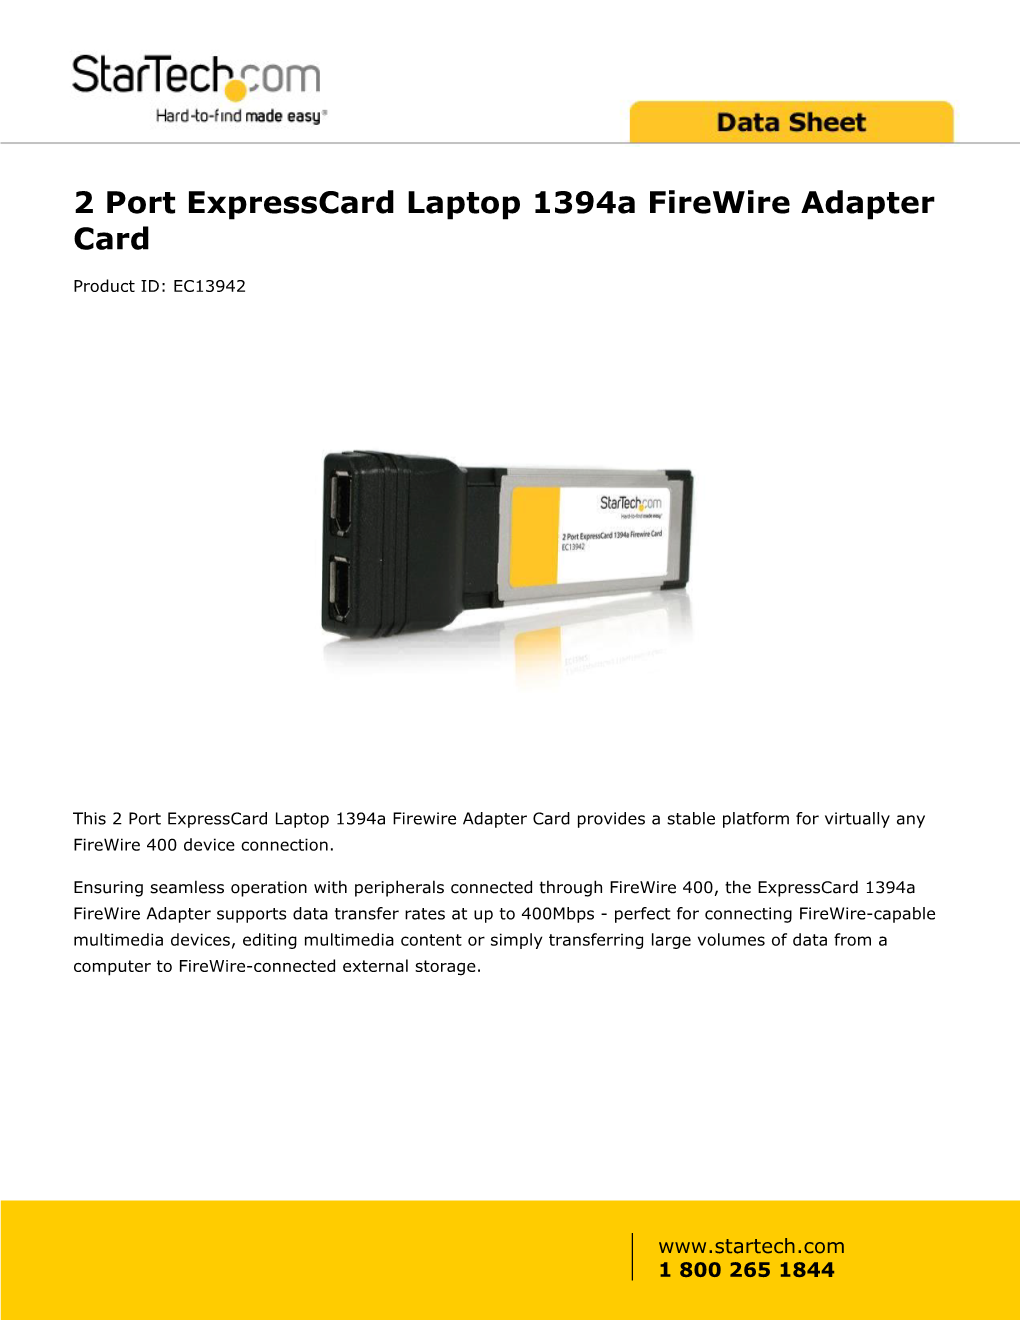 2 Port Expresscard Laptop 1394A Firewire Adapter Card